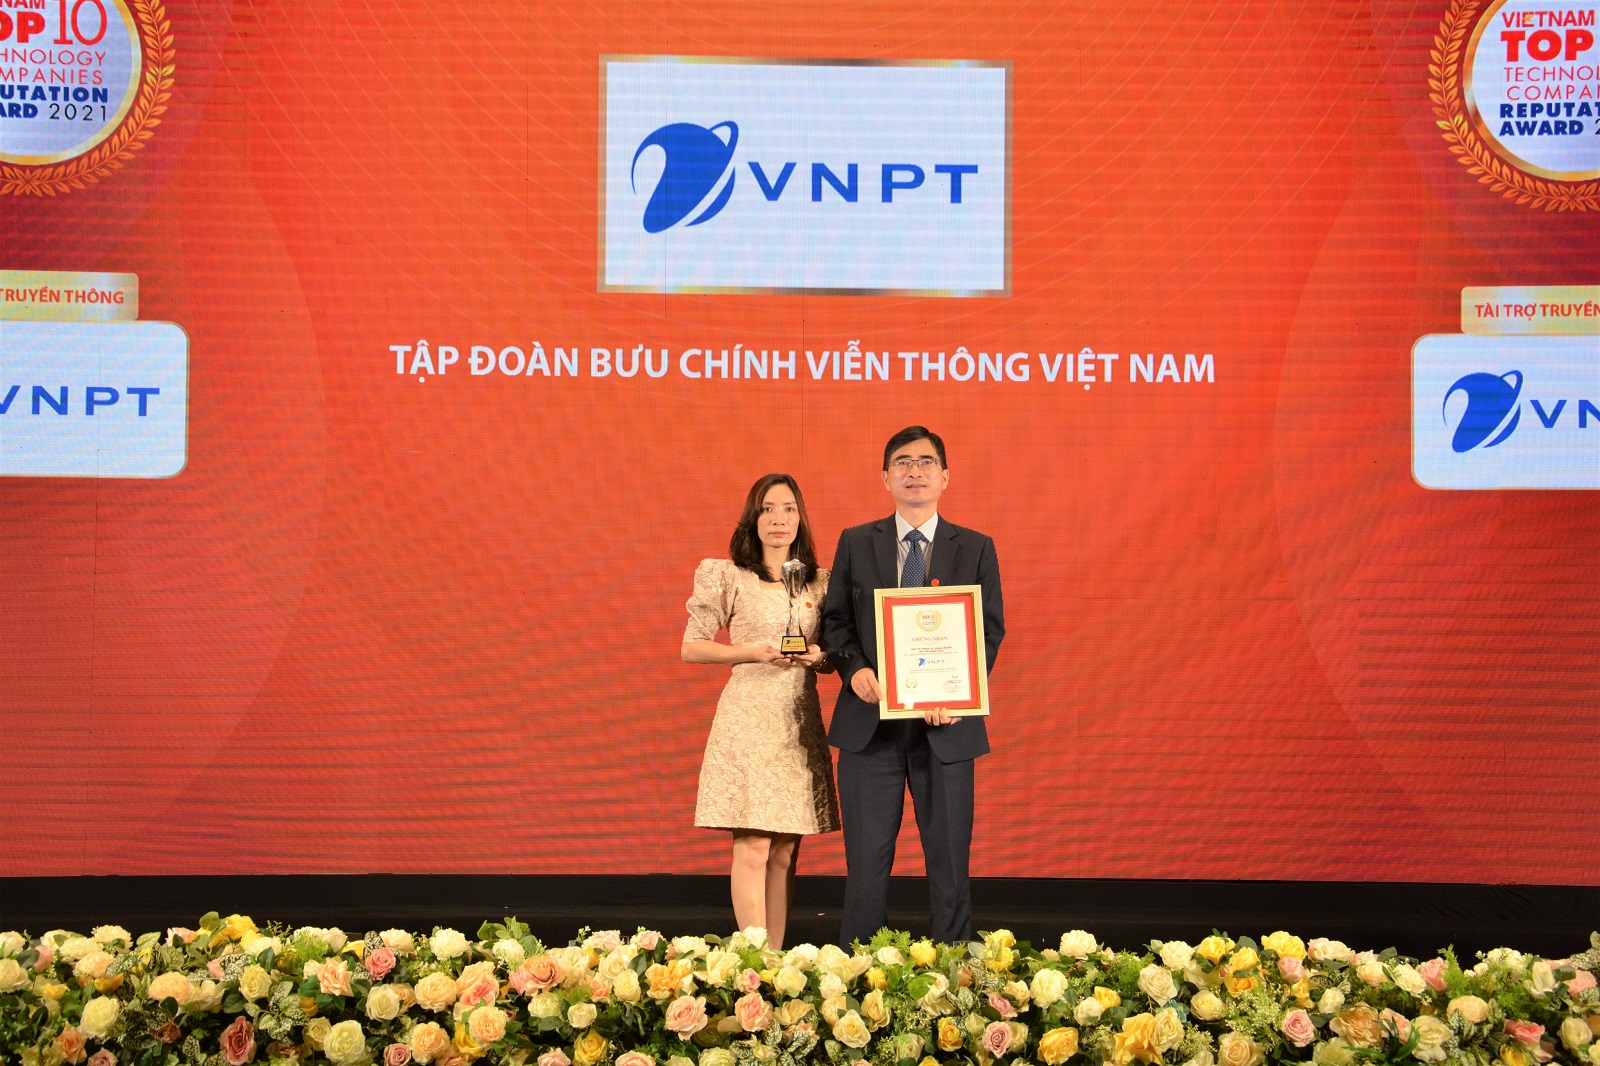 Vượt qua nhiều tập đoàn lớn, VNPT lọt Top 2 công ty công nghệ uy tín nhất Việt Nam